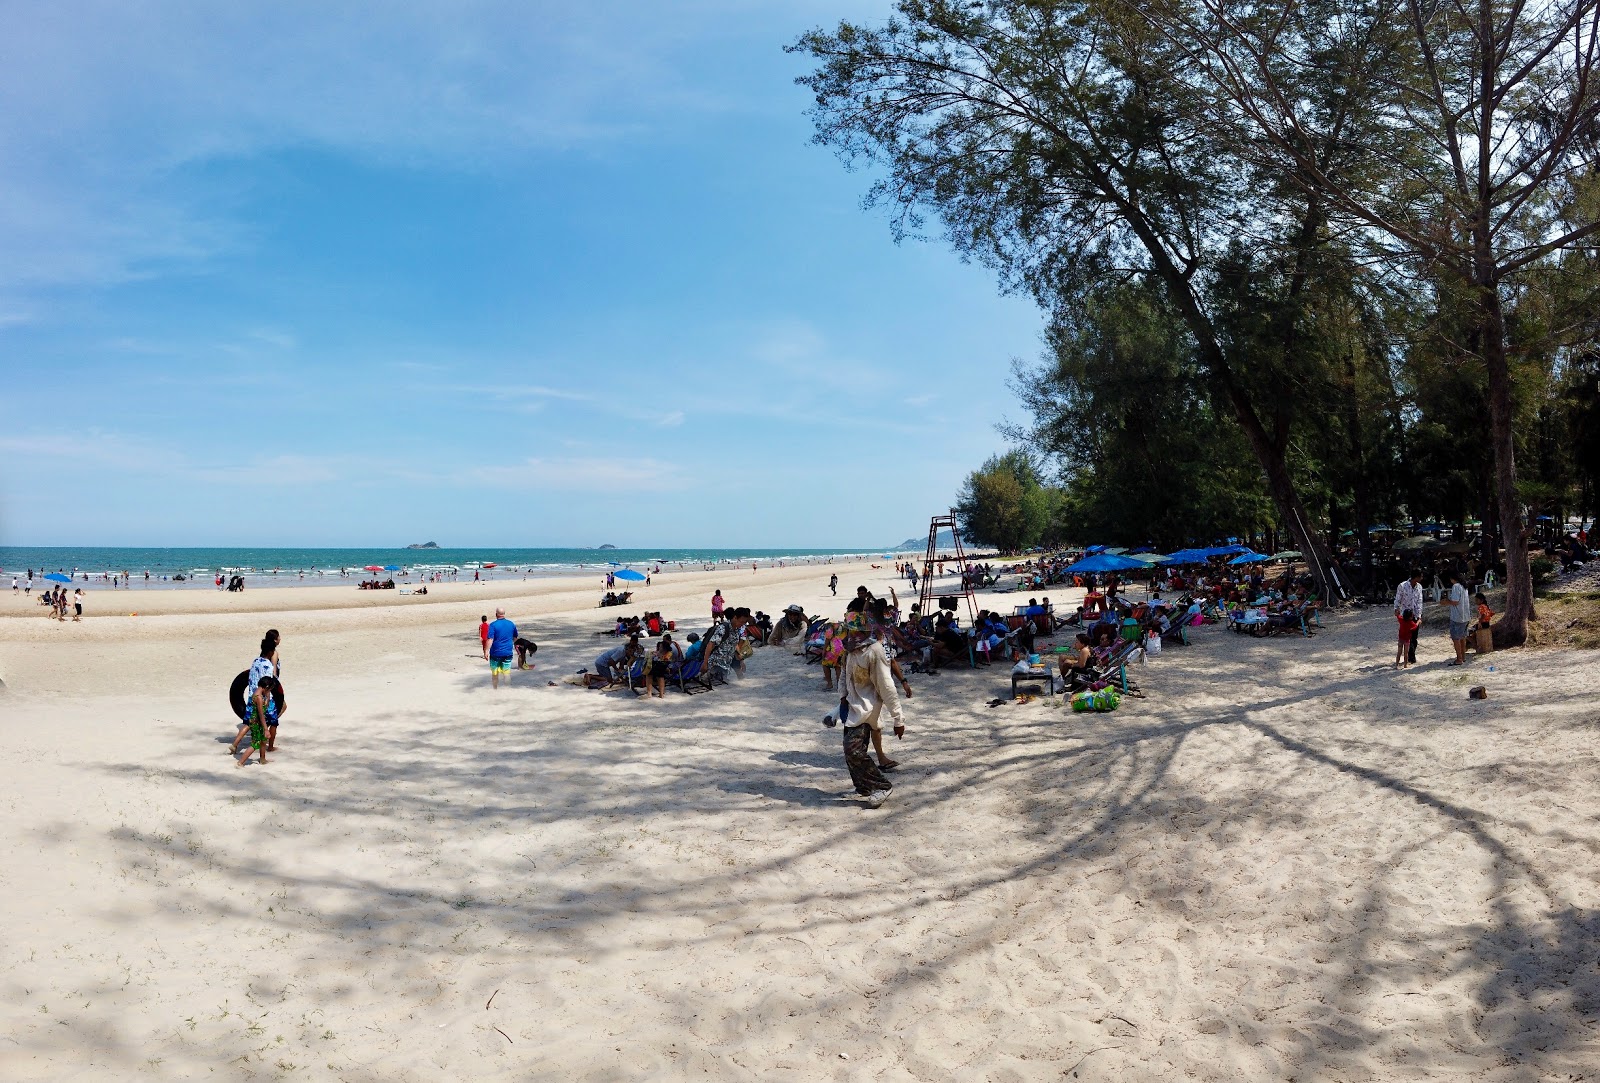 Suan Son Beach'in fotoğrafı geniş plaj ile birlikte